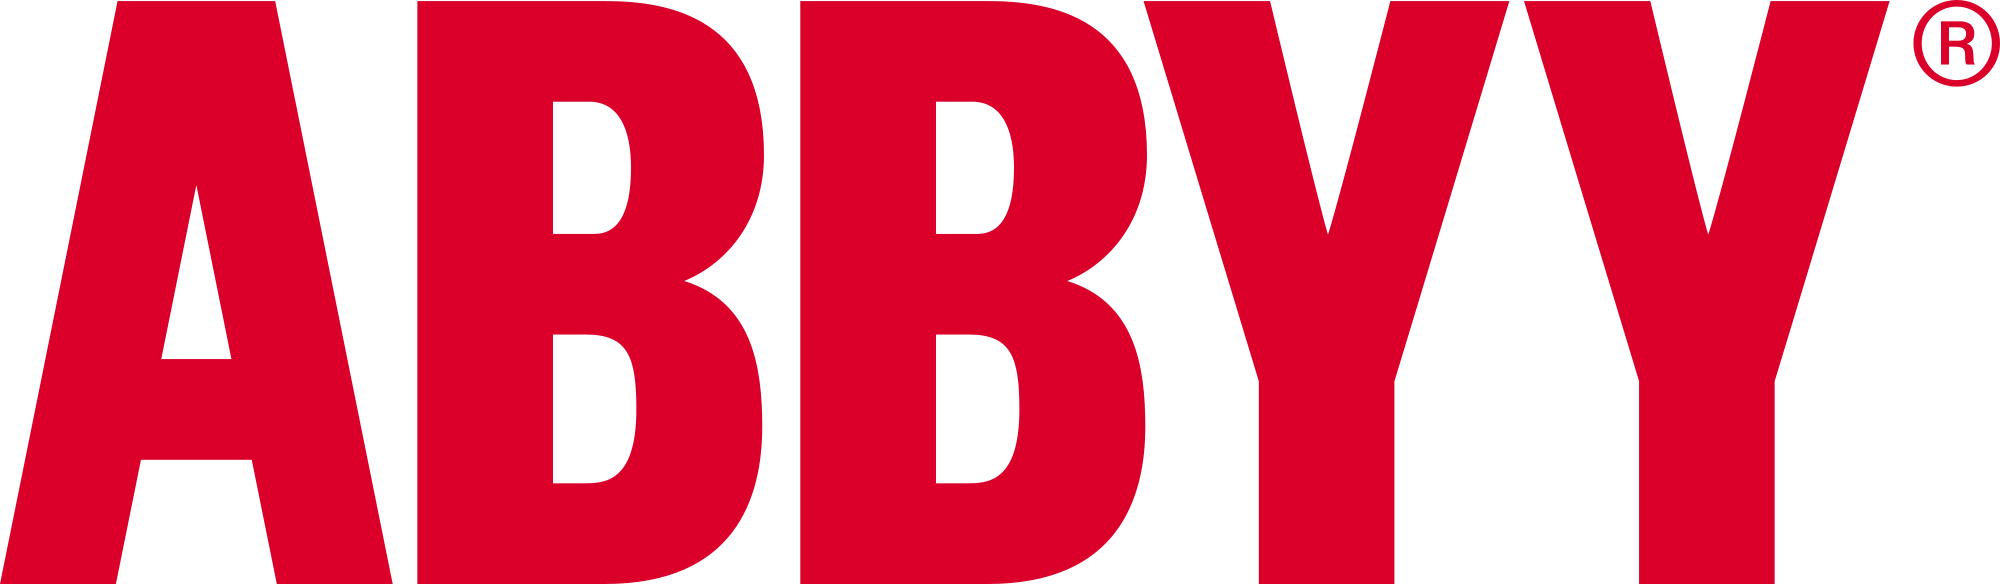 Abbyy - Аби Продакшн - BIT Software